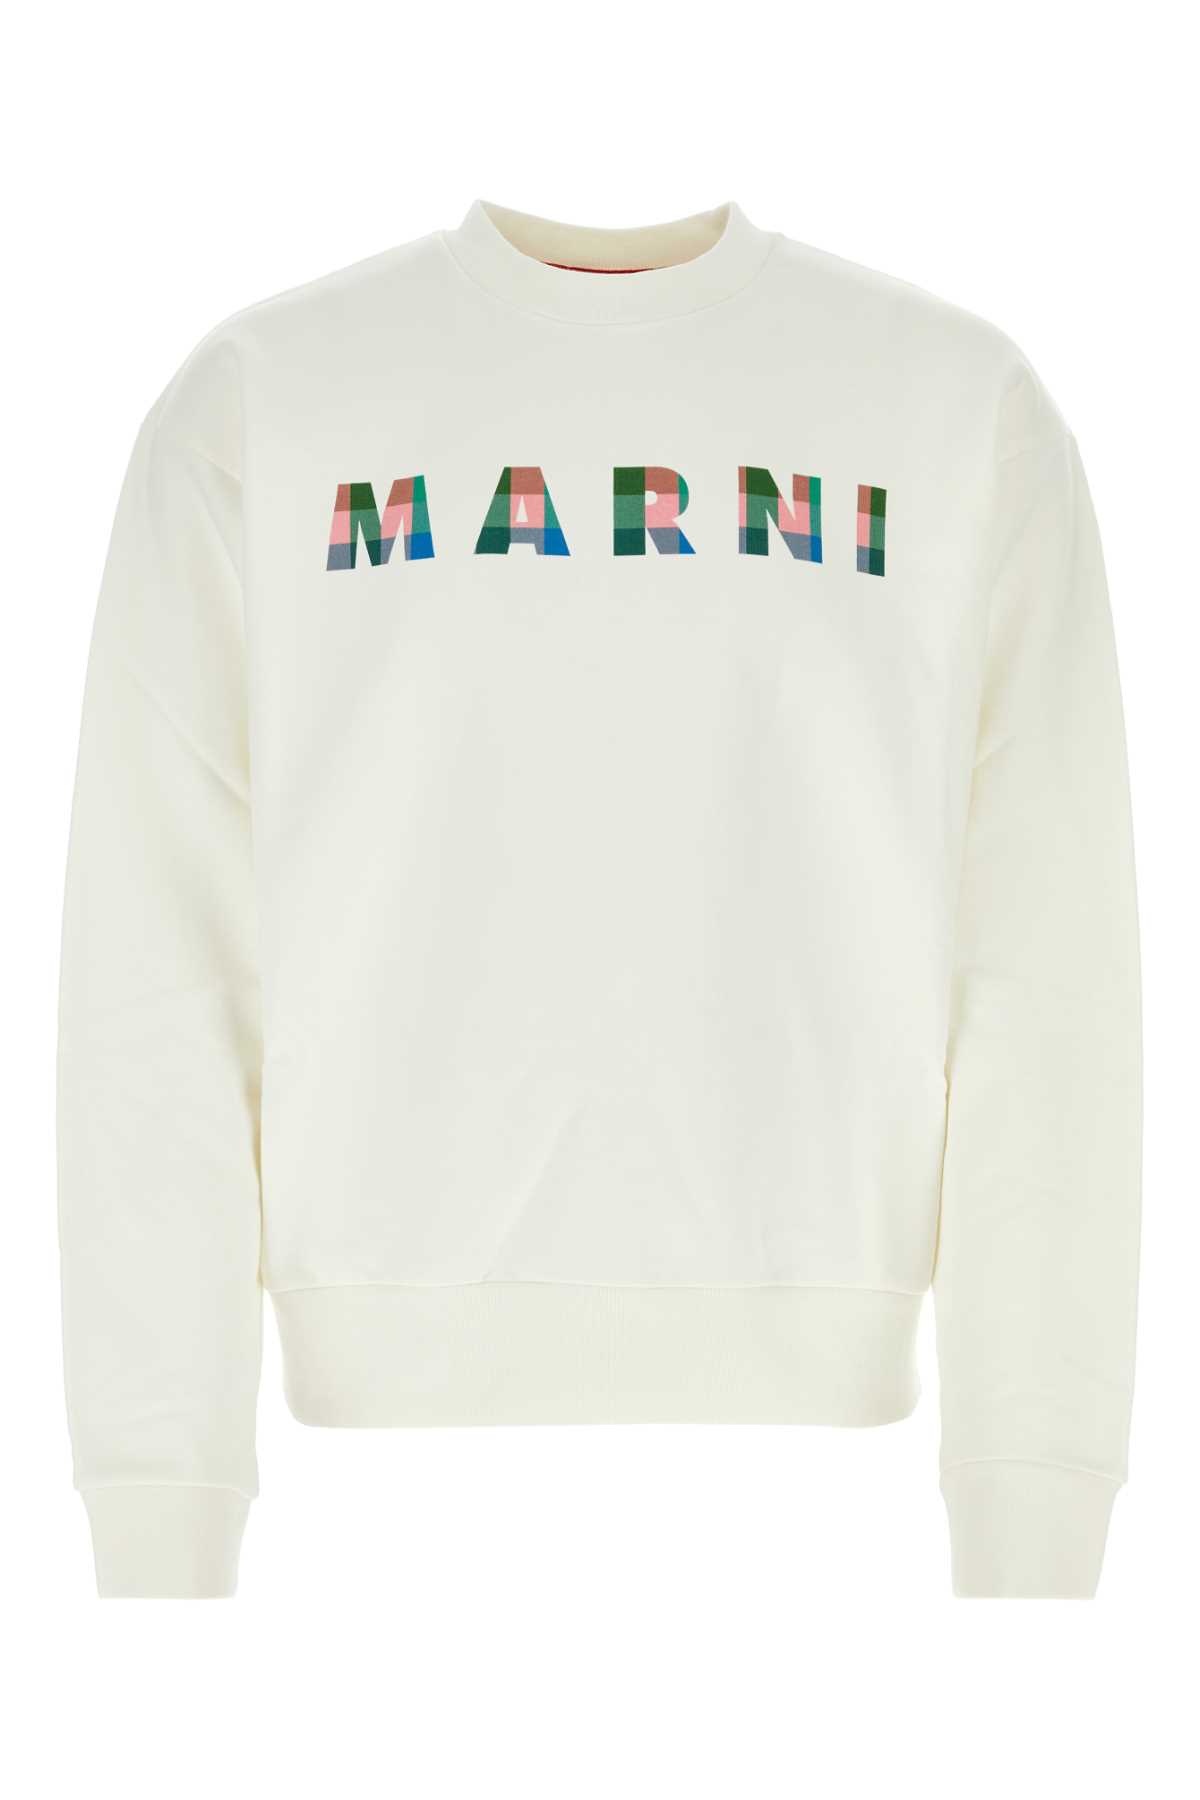 Shop Marni White Cotton Sweatshirt In Naturalwhite